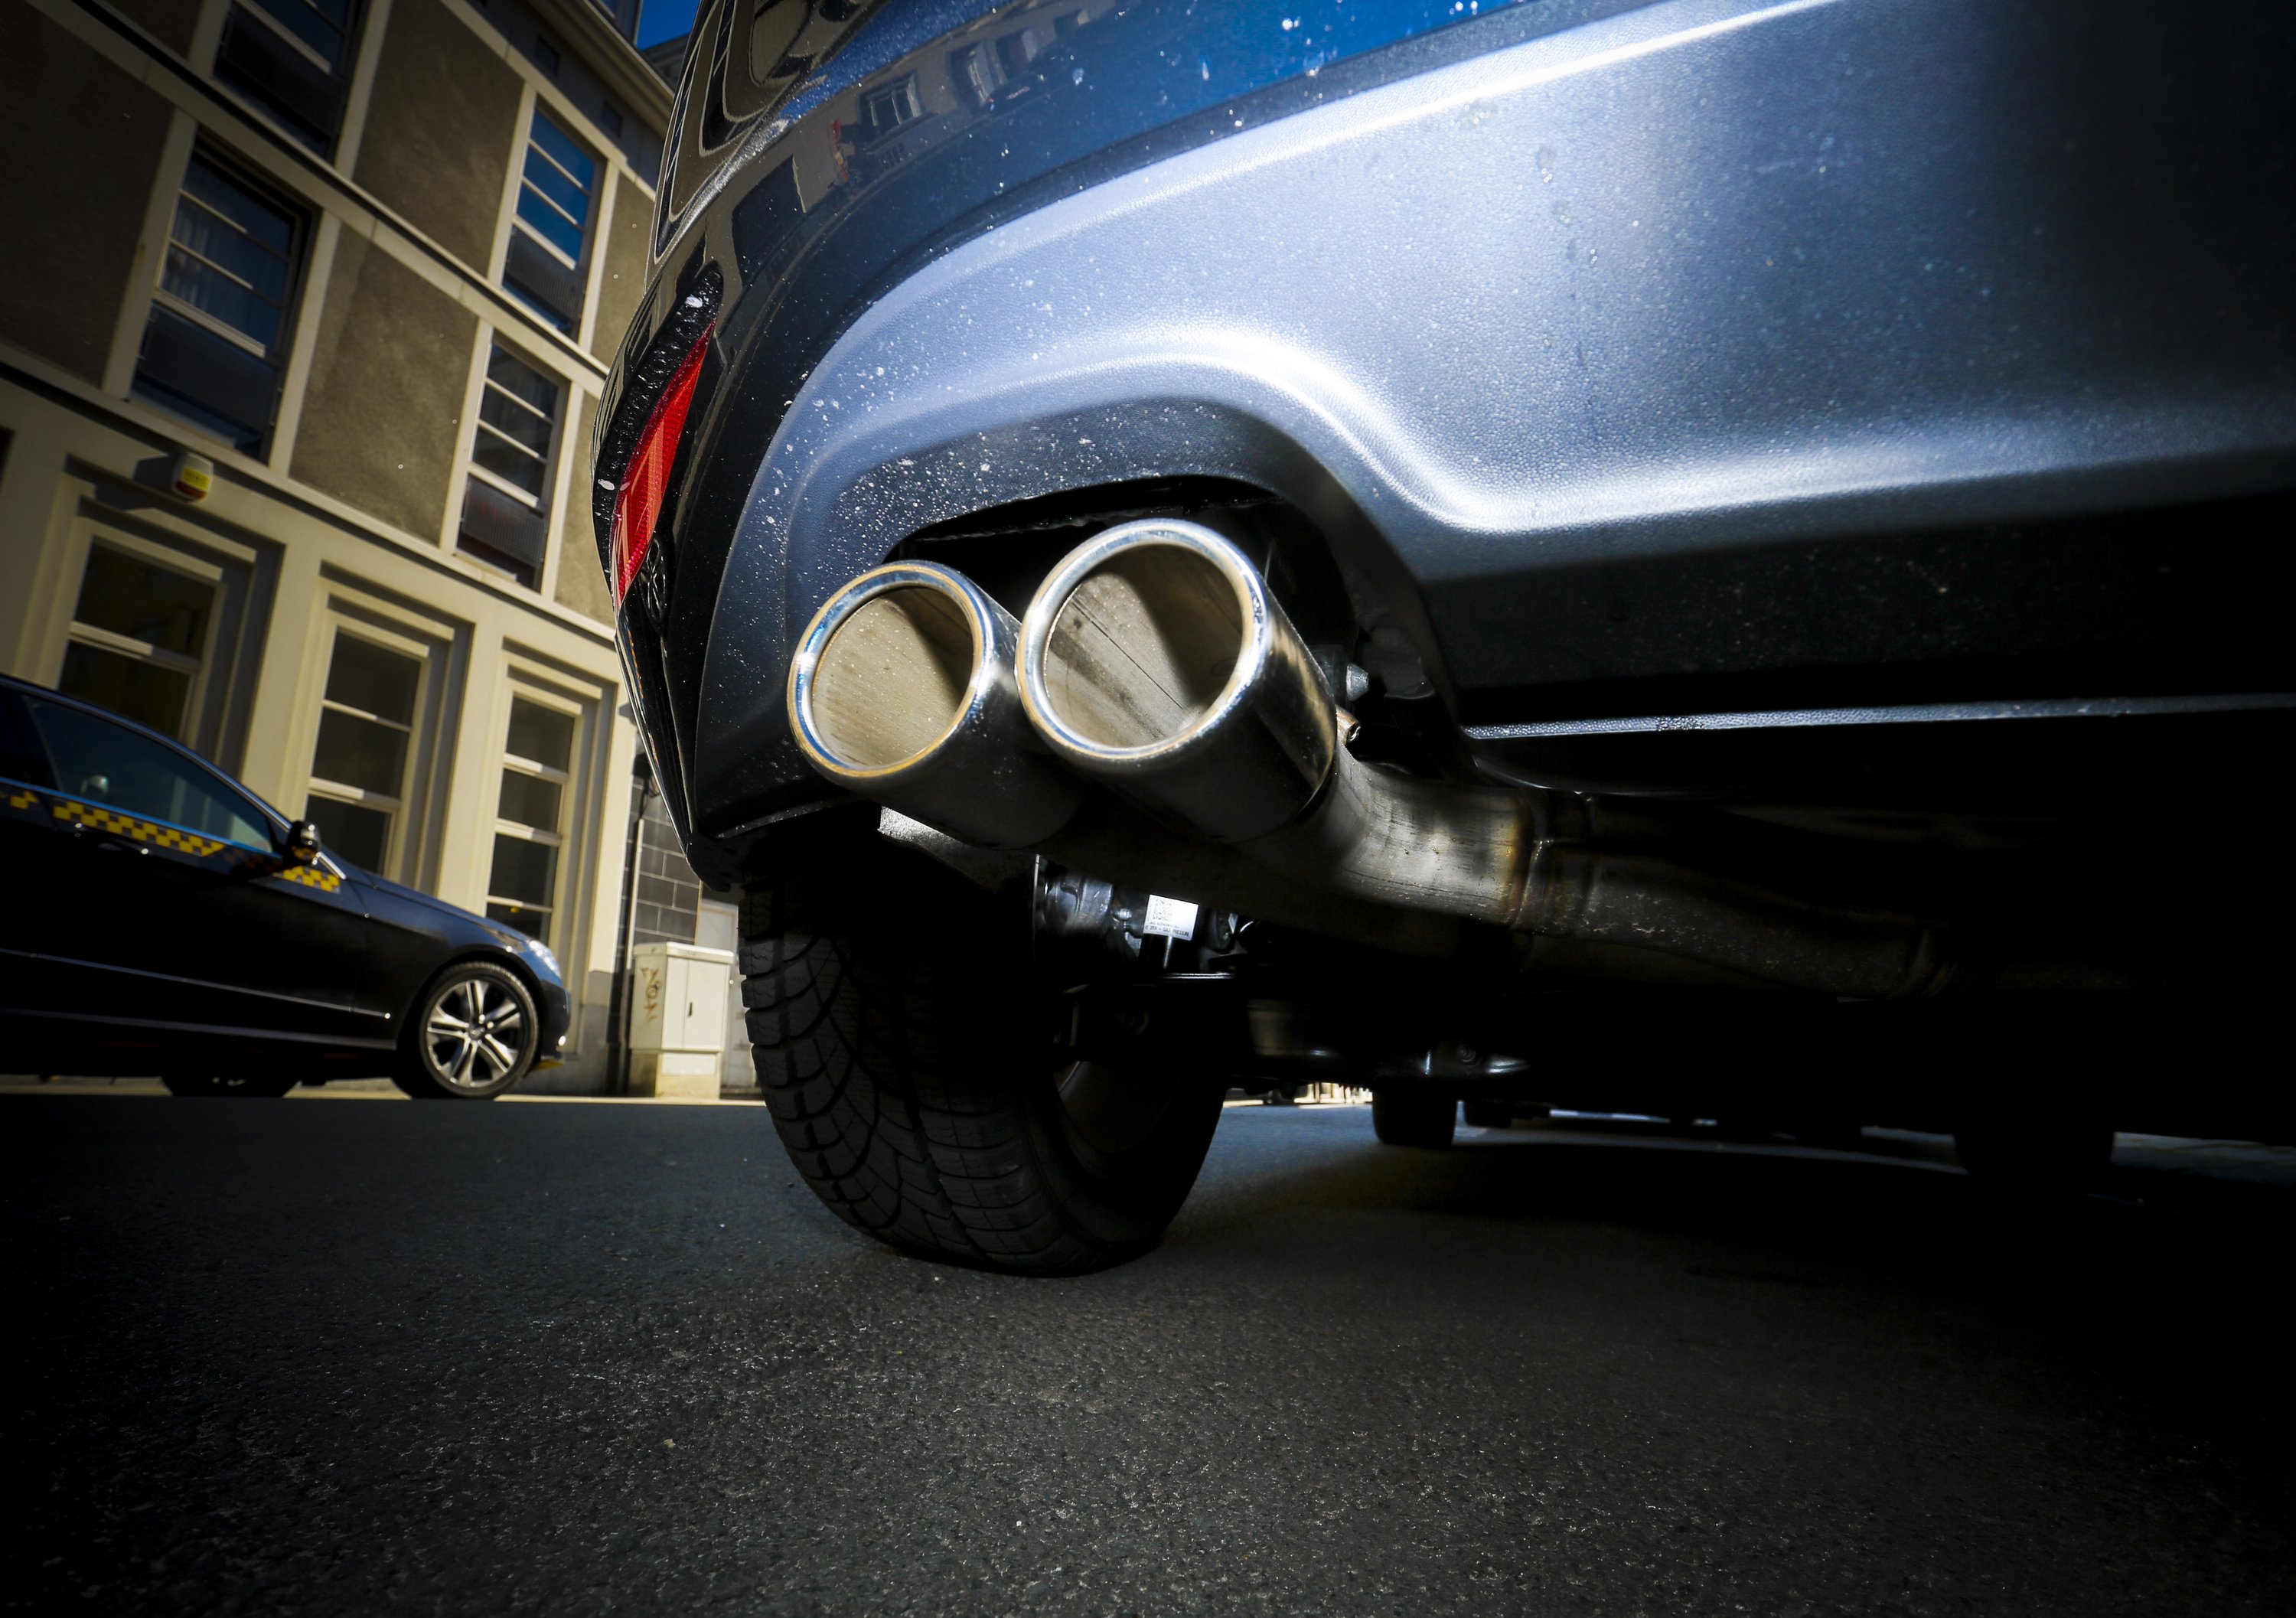 Emissioni CO2 auto, accordo UE per taglio del 37,5% entro il 2030